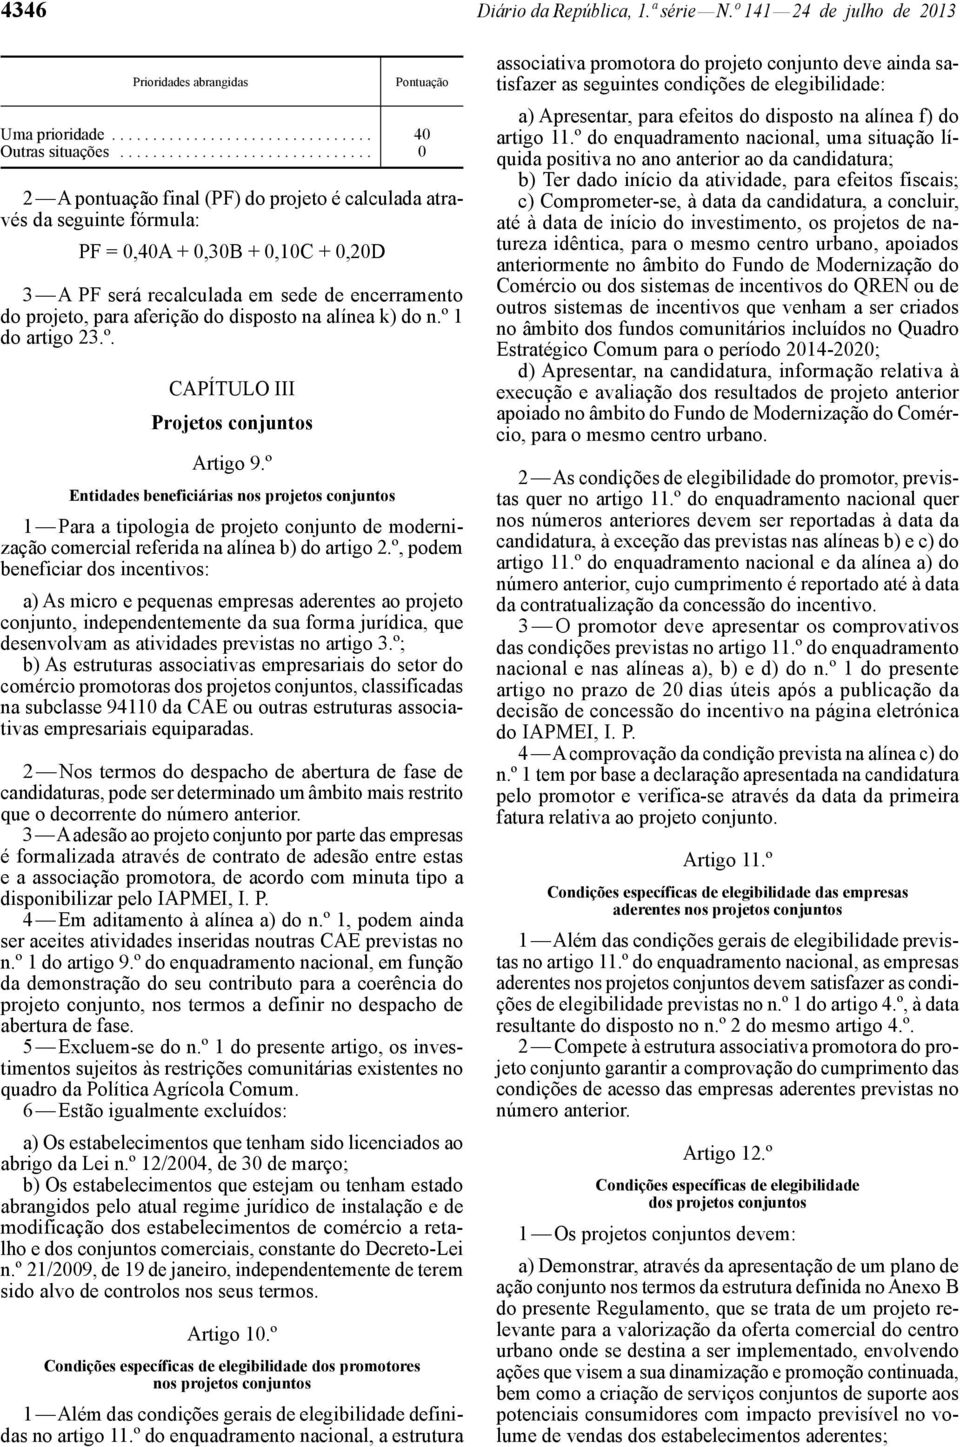 projeto, para aferição do disposto na alínea k) do n.º 1 do artigo 23.º. CAPÍTULO III Projetos conjuntos Artigo 9.